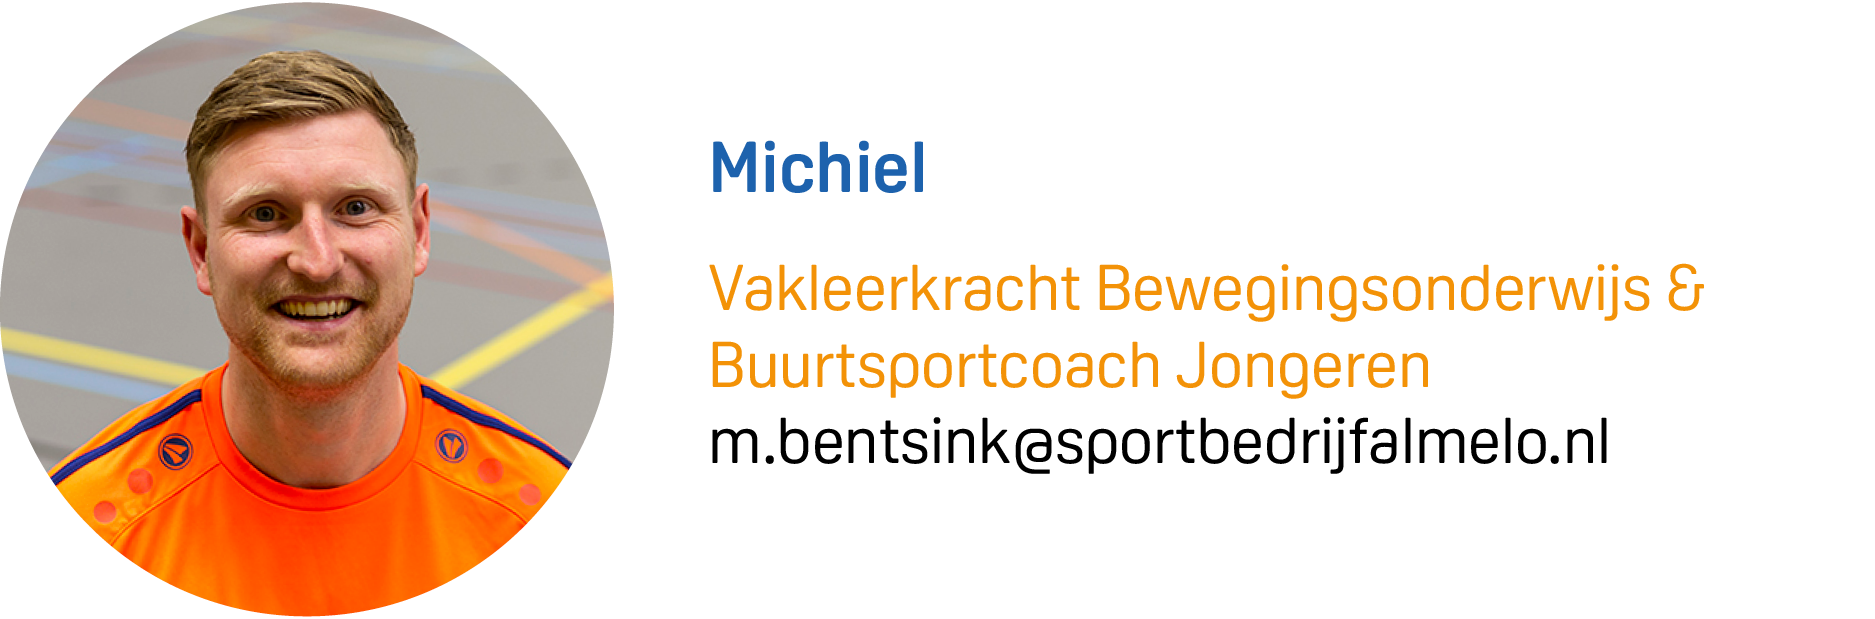 Michiel Visite MAIL.png